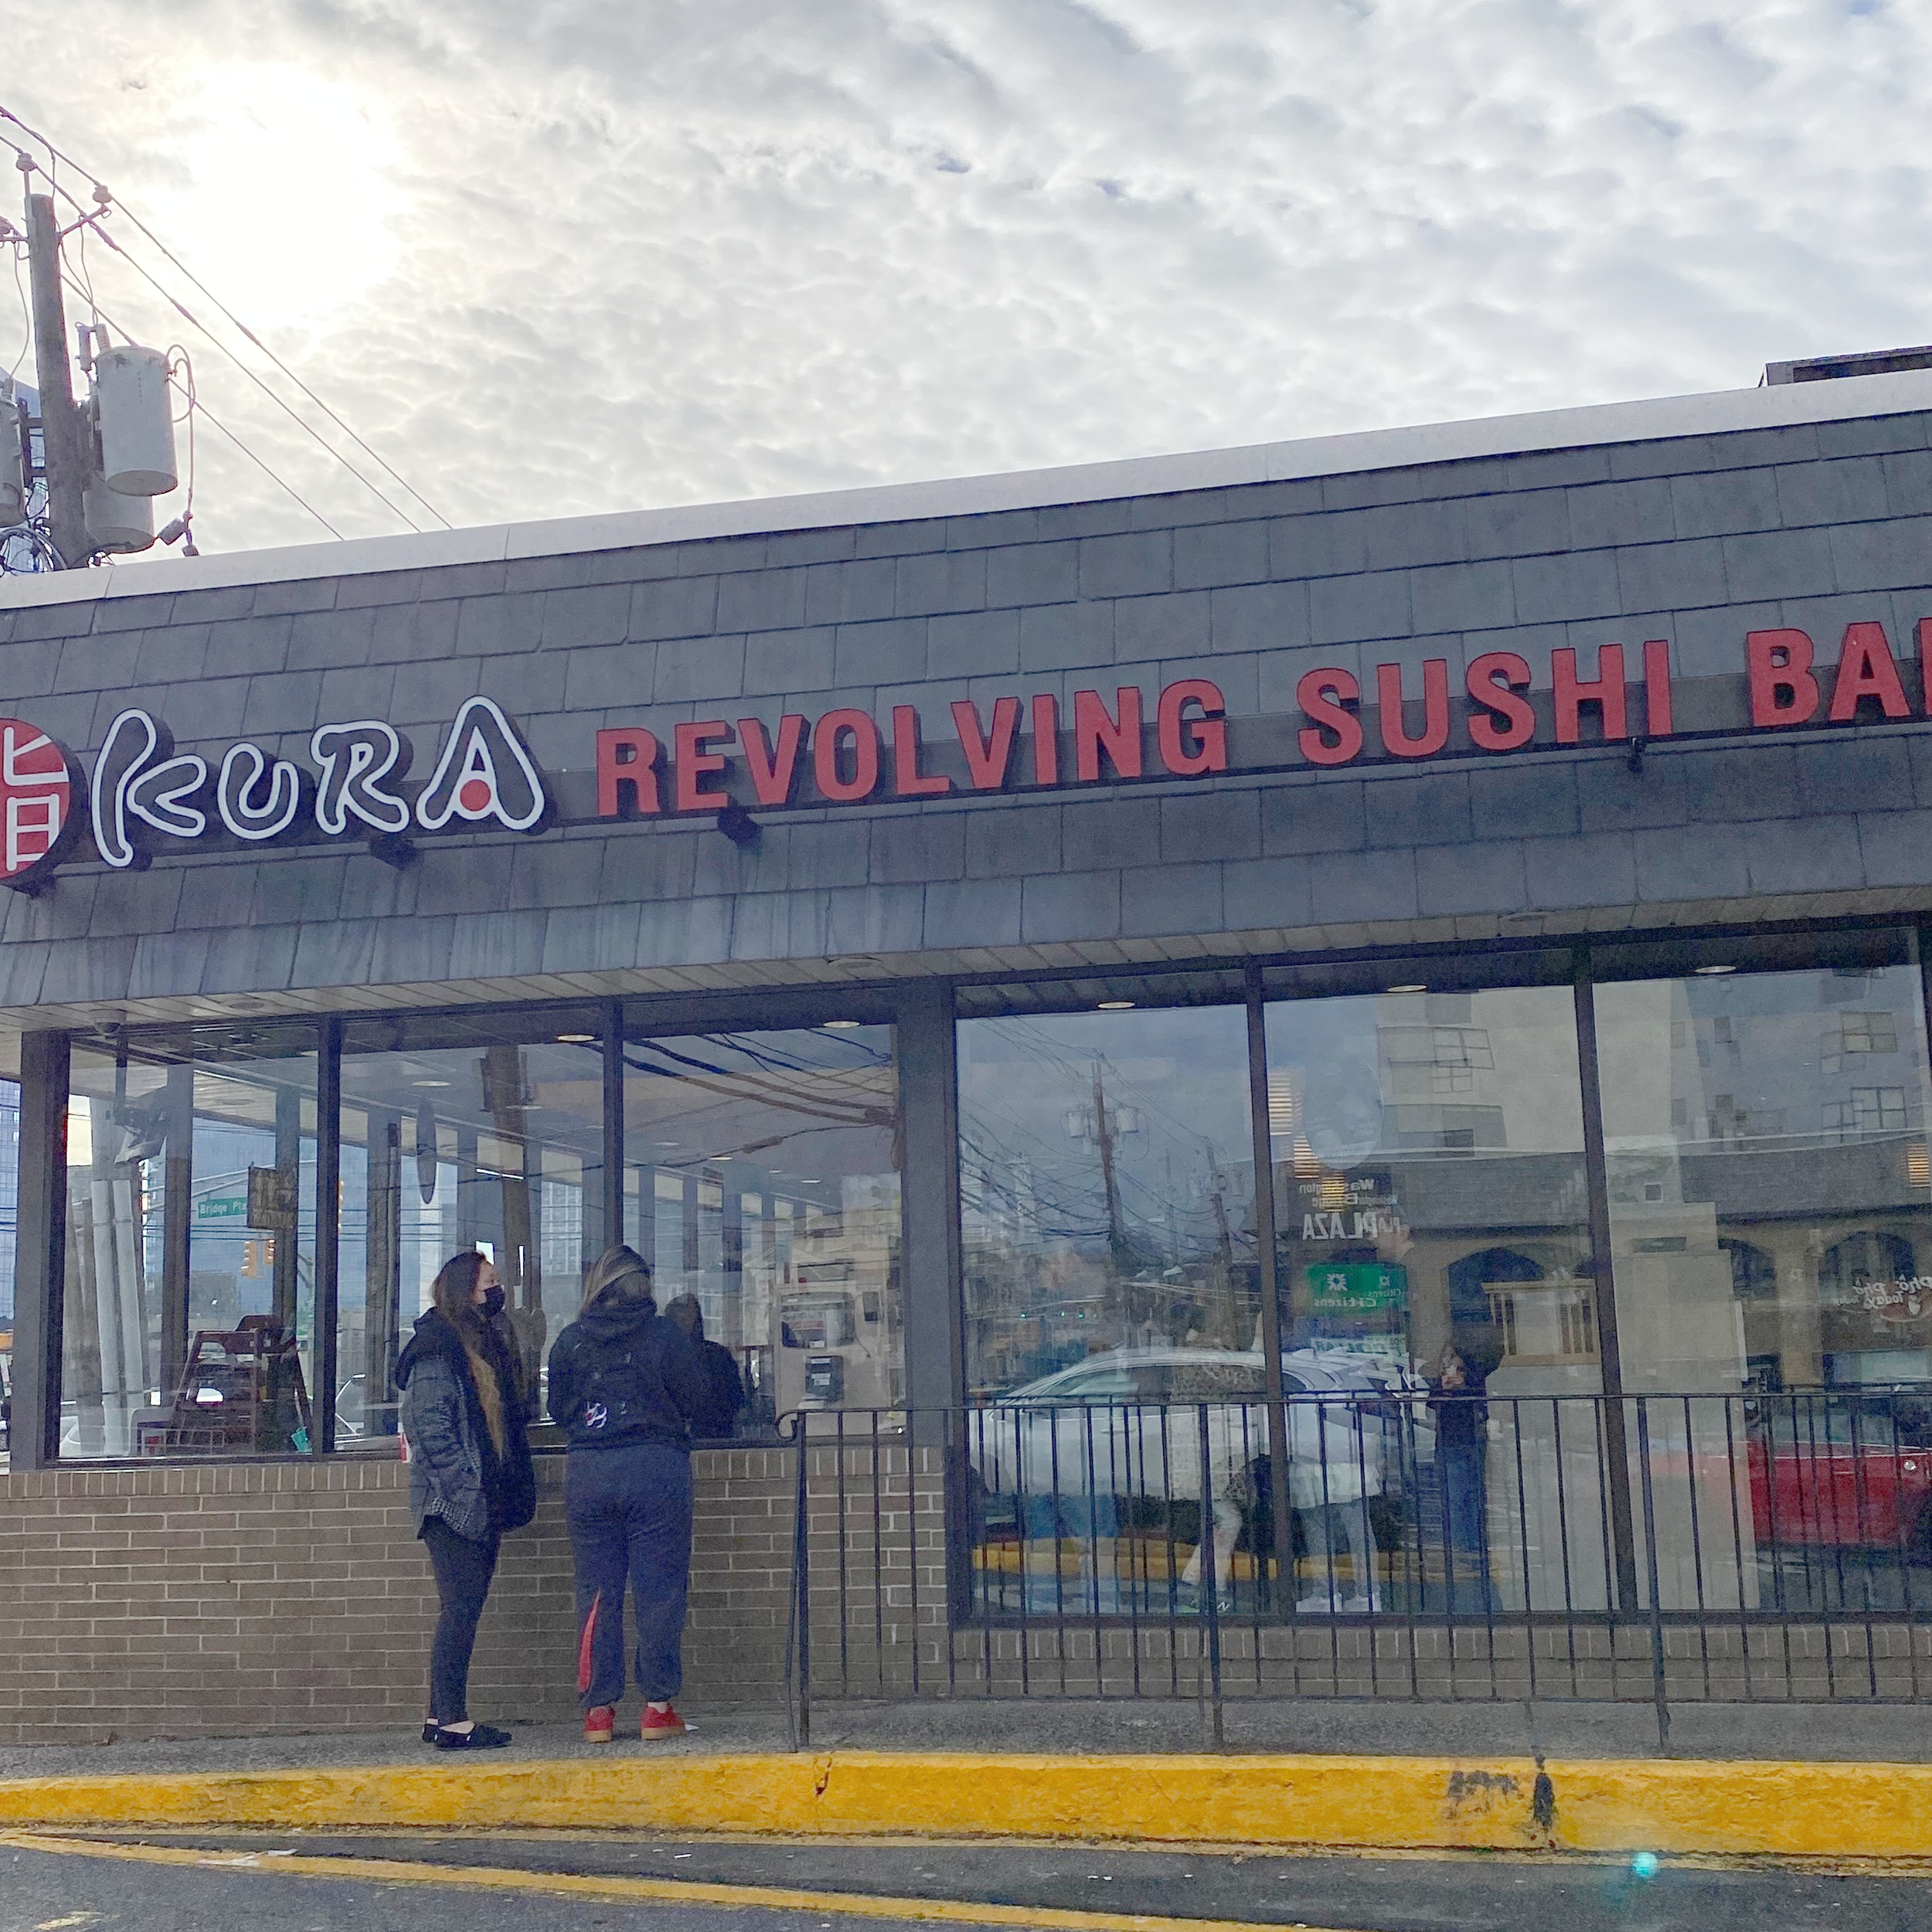 Kura Revolving Sushi Bar - Fort Lee, NJ - NY Foodie Family